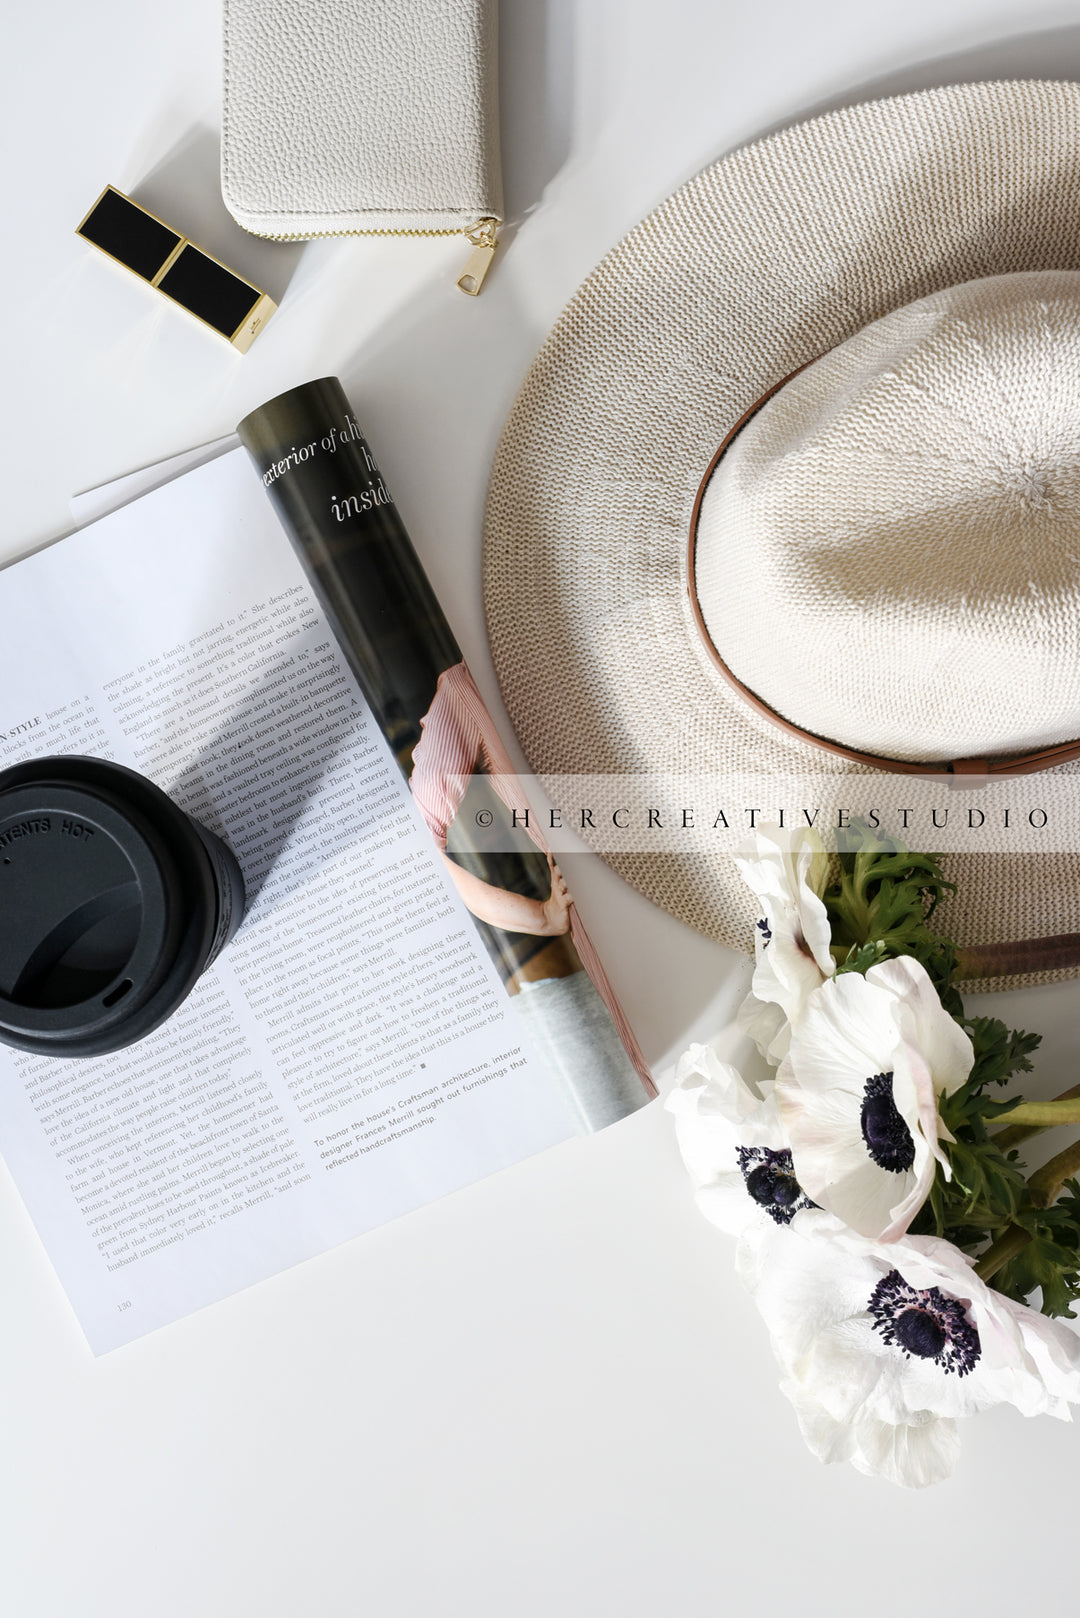 Panama Hat, Coffee, Lipstick & Anemone, Styled Image